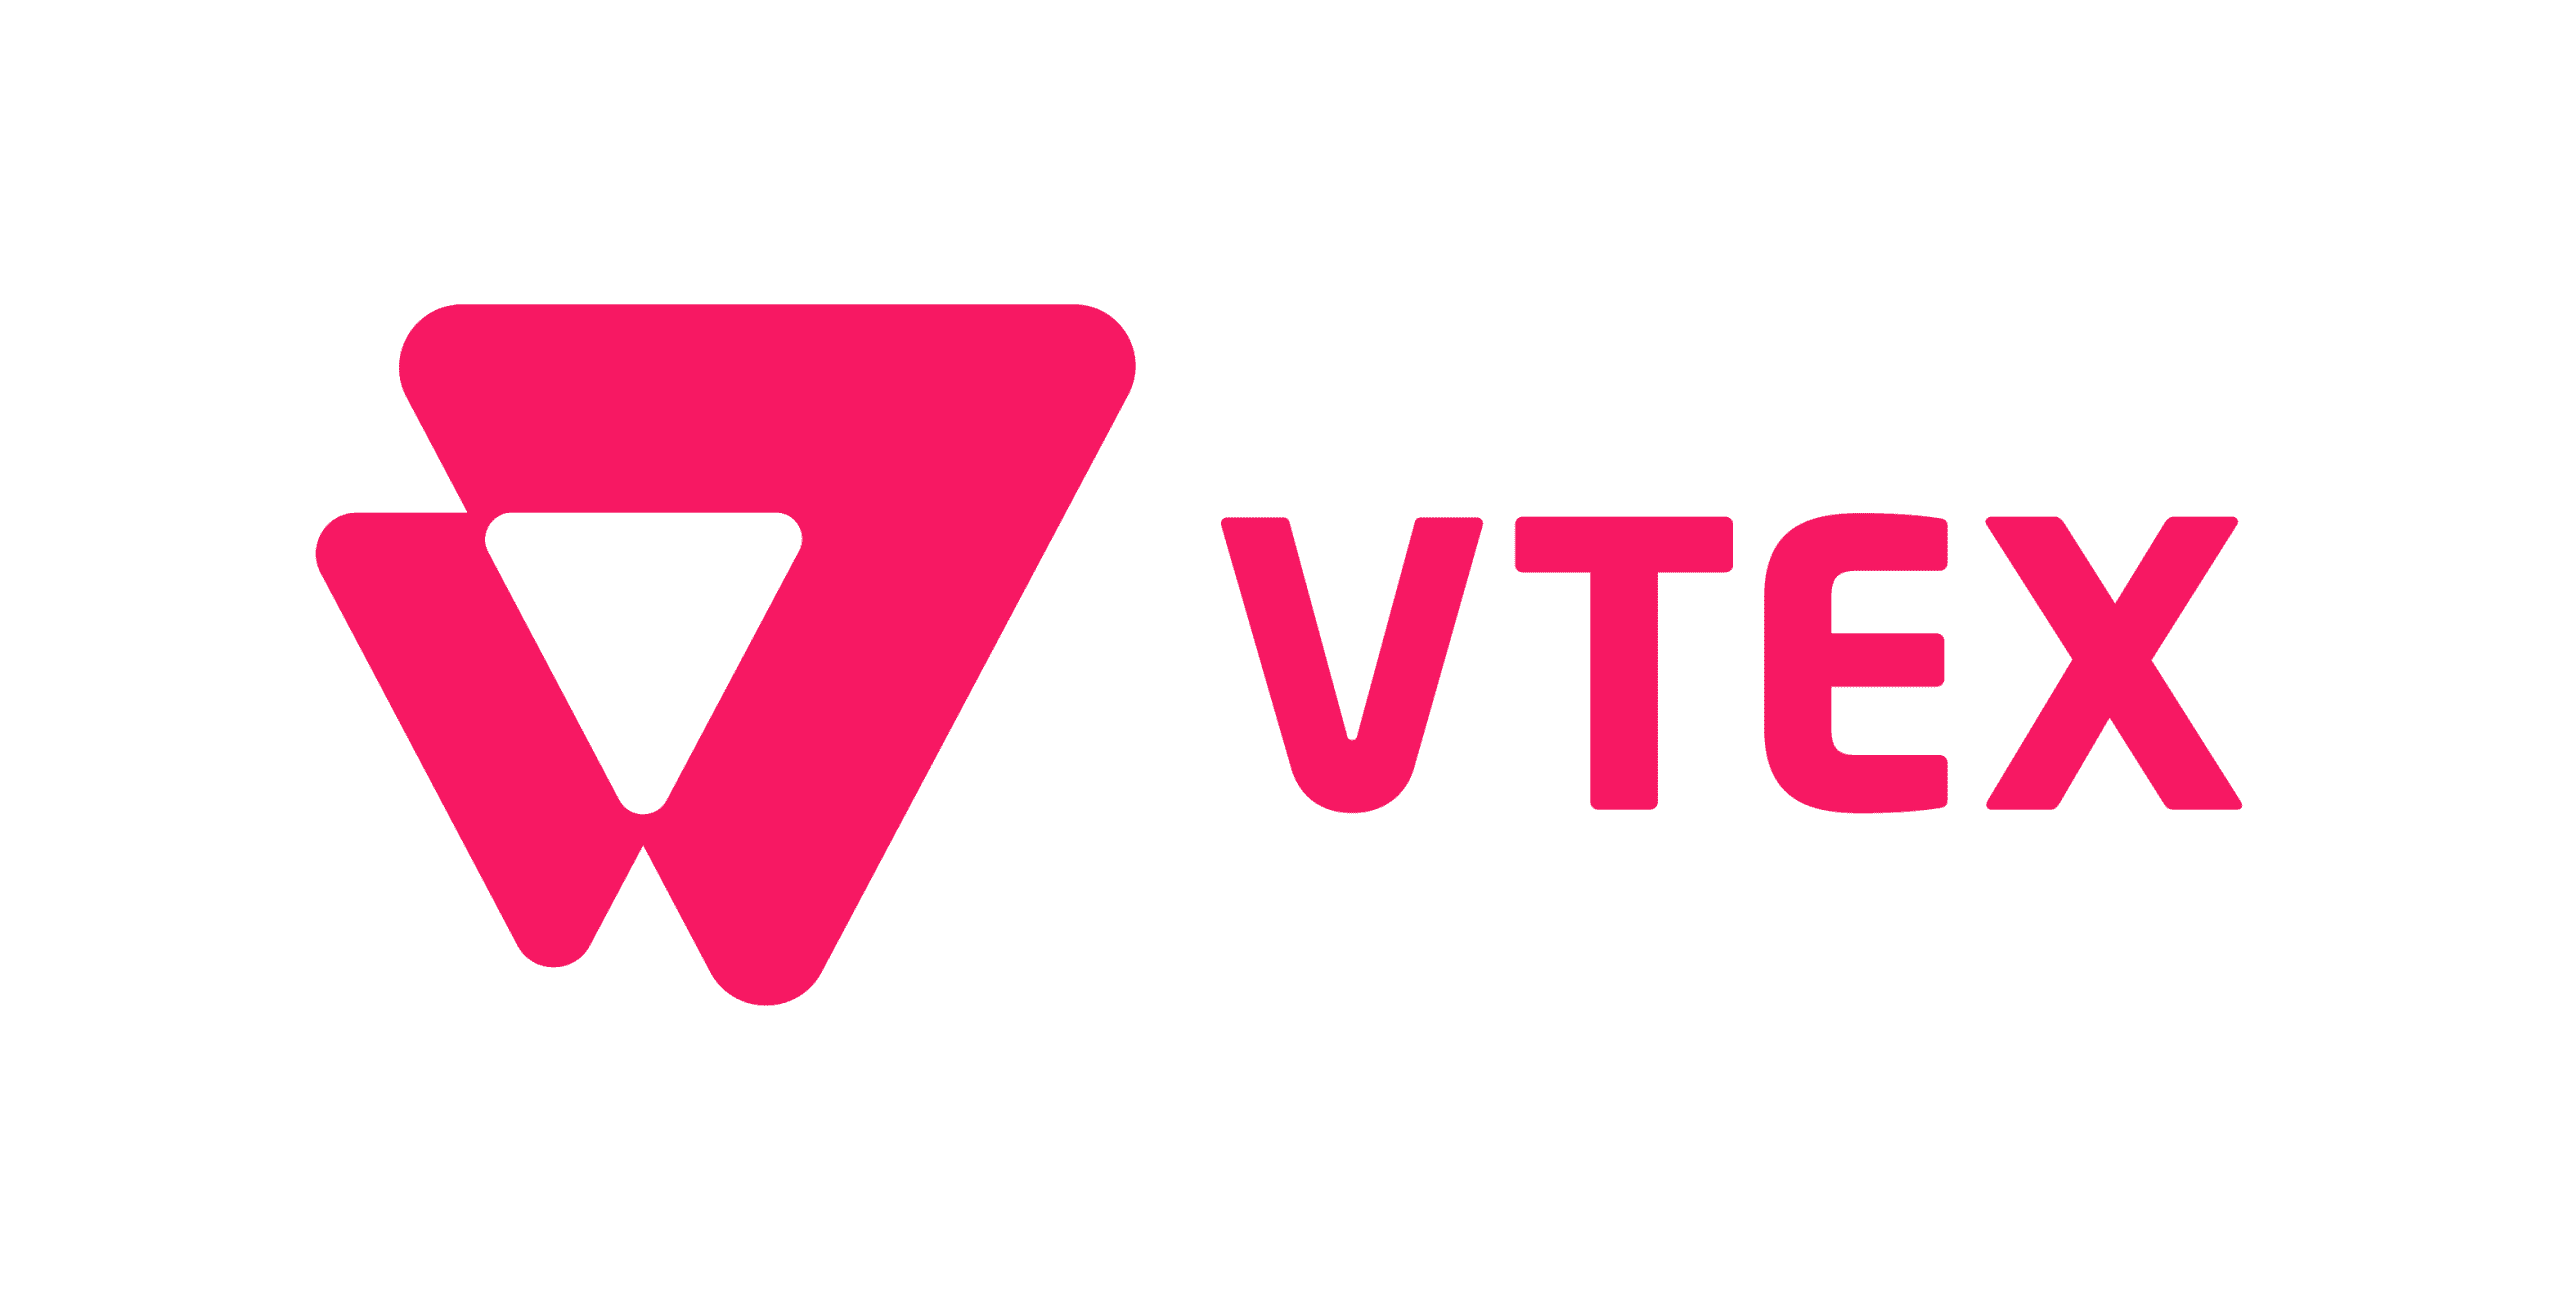 VTEX logo